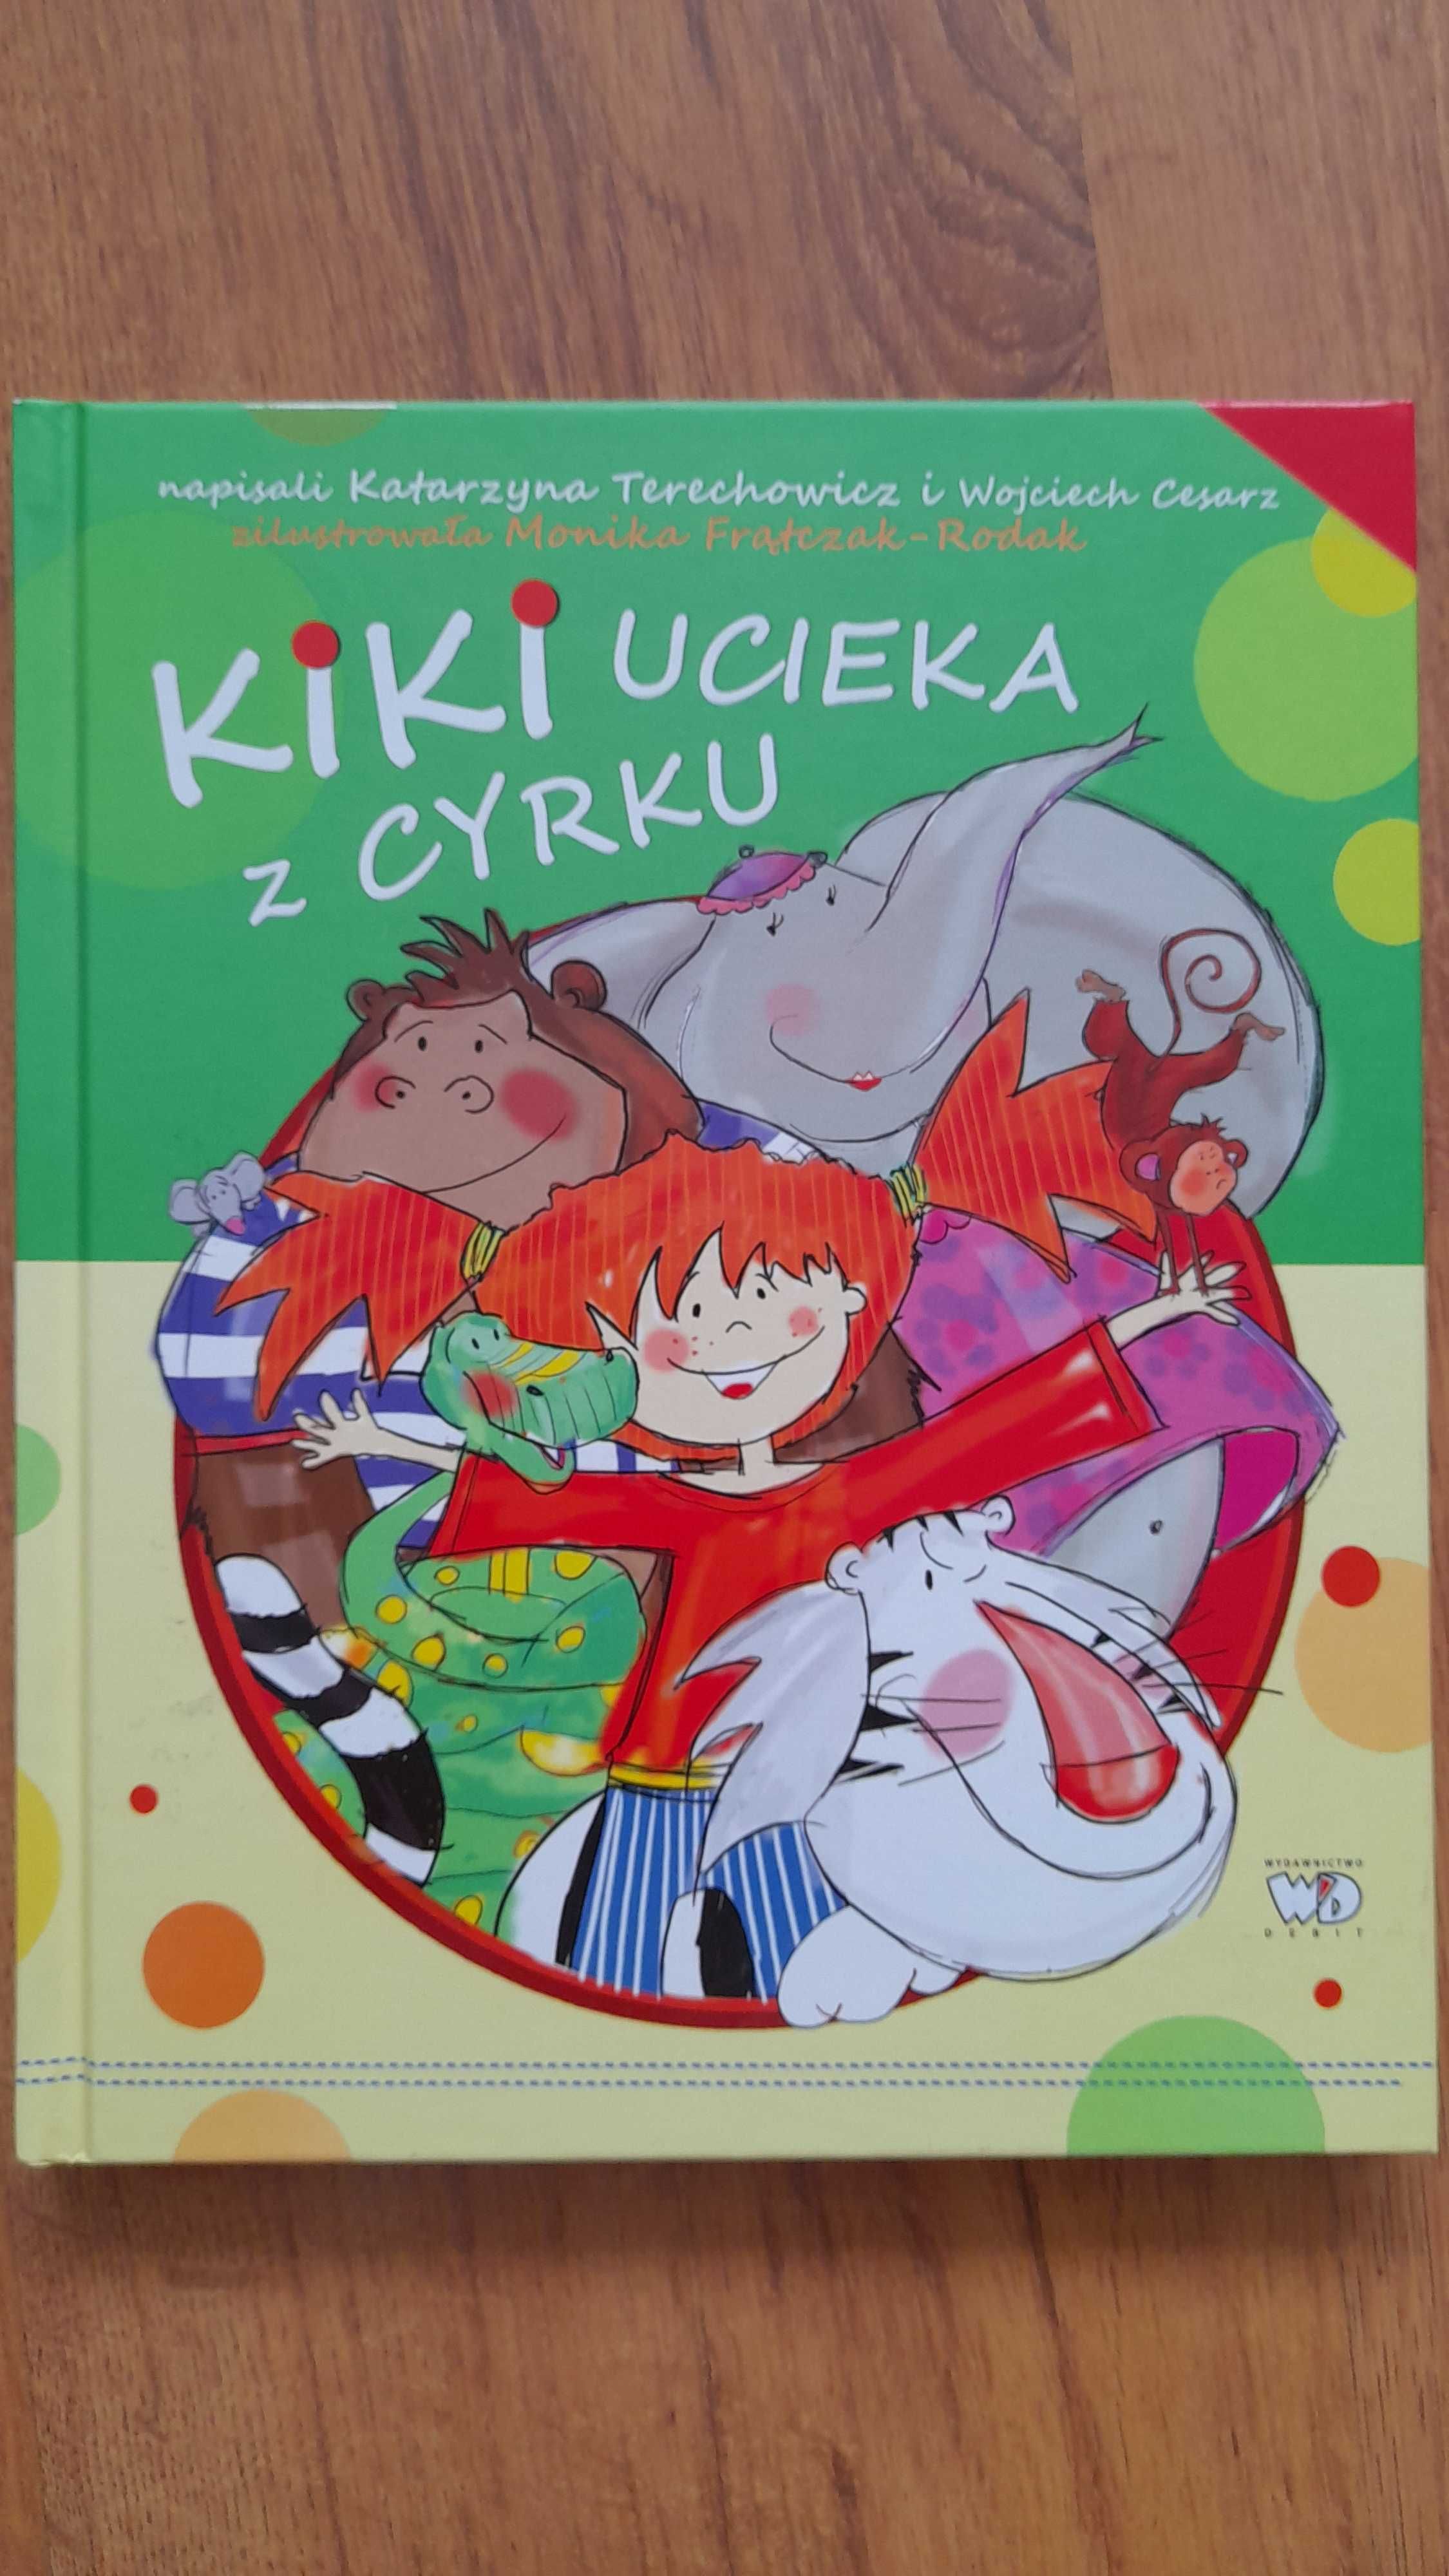 Kiki ucieka z cyrku, książka dla dzieci